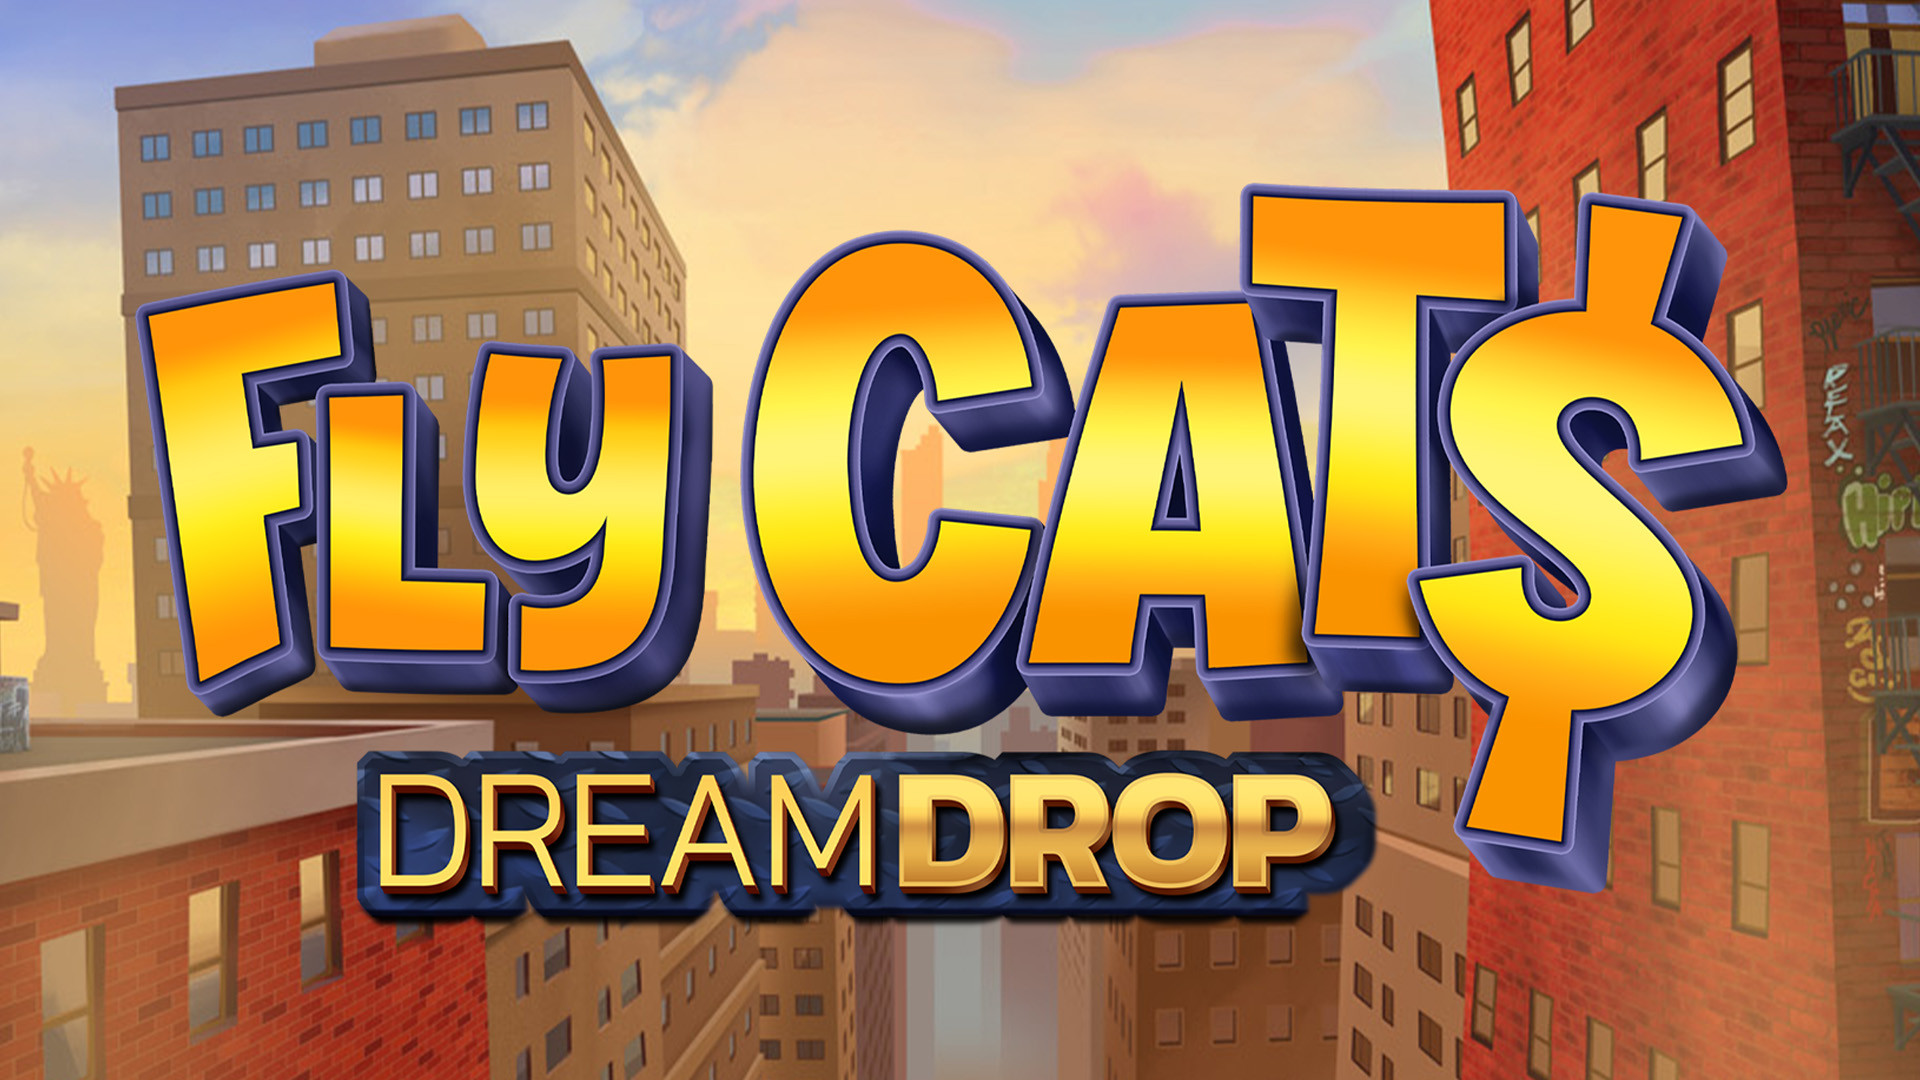 Fly Cats Dream Drop